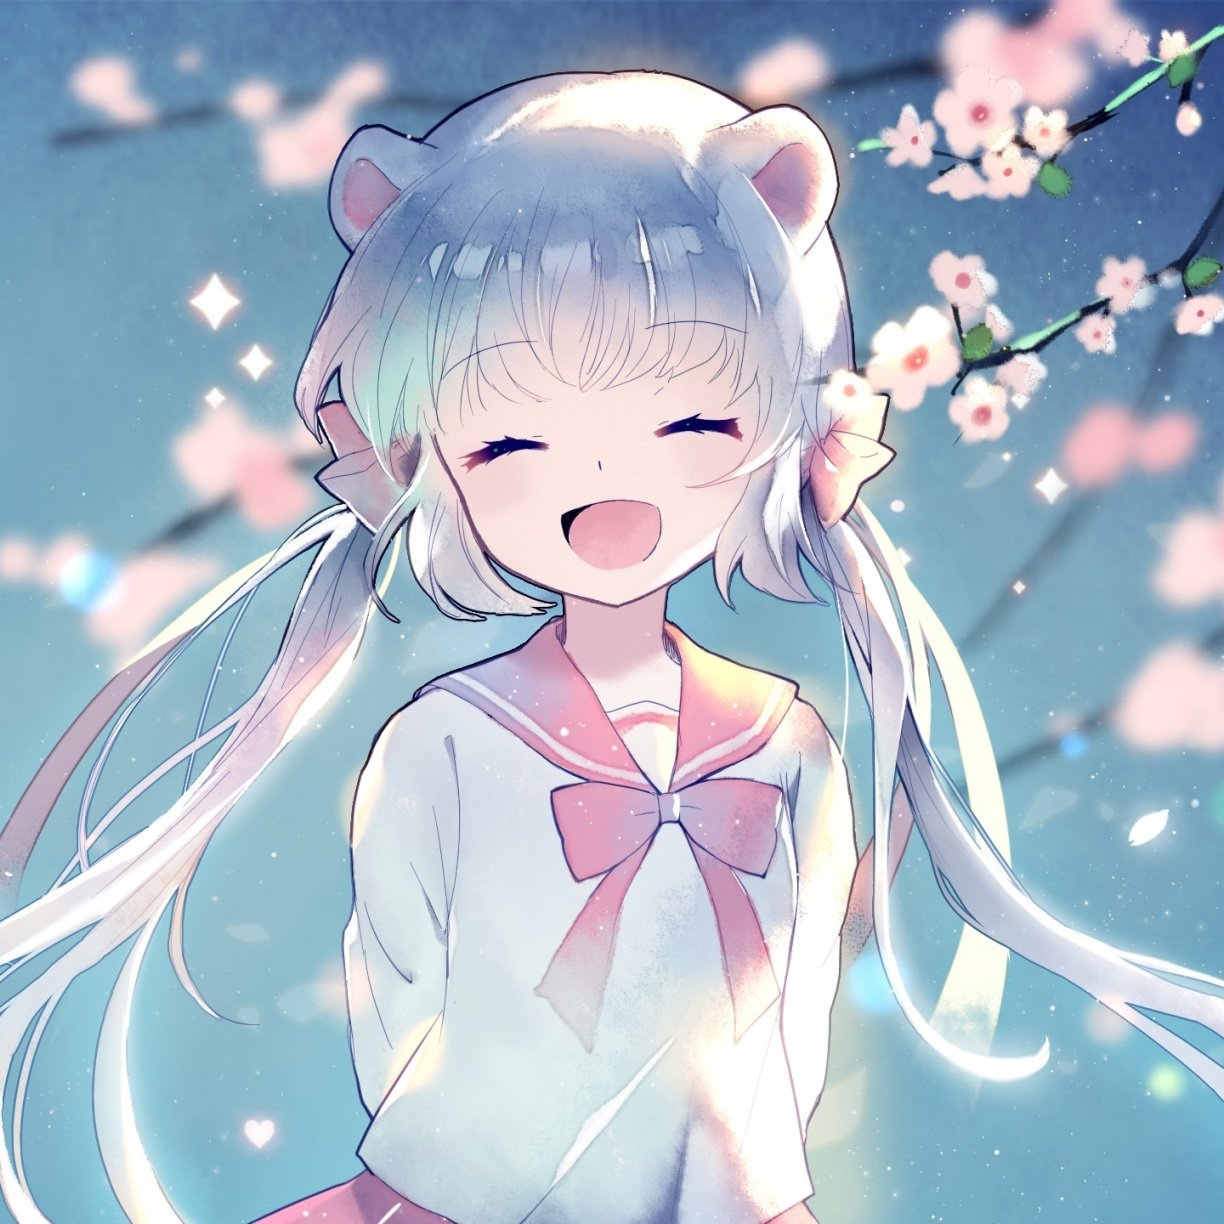 Xem ngay top 20 anime hình nền cute Dành cho người yêu dễ thương